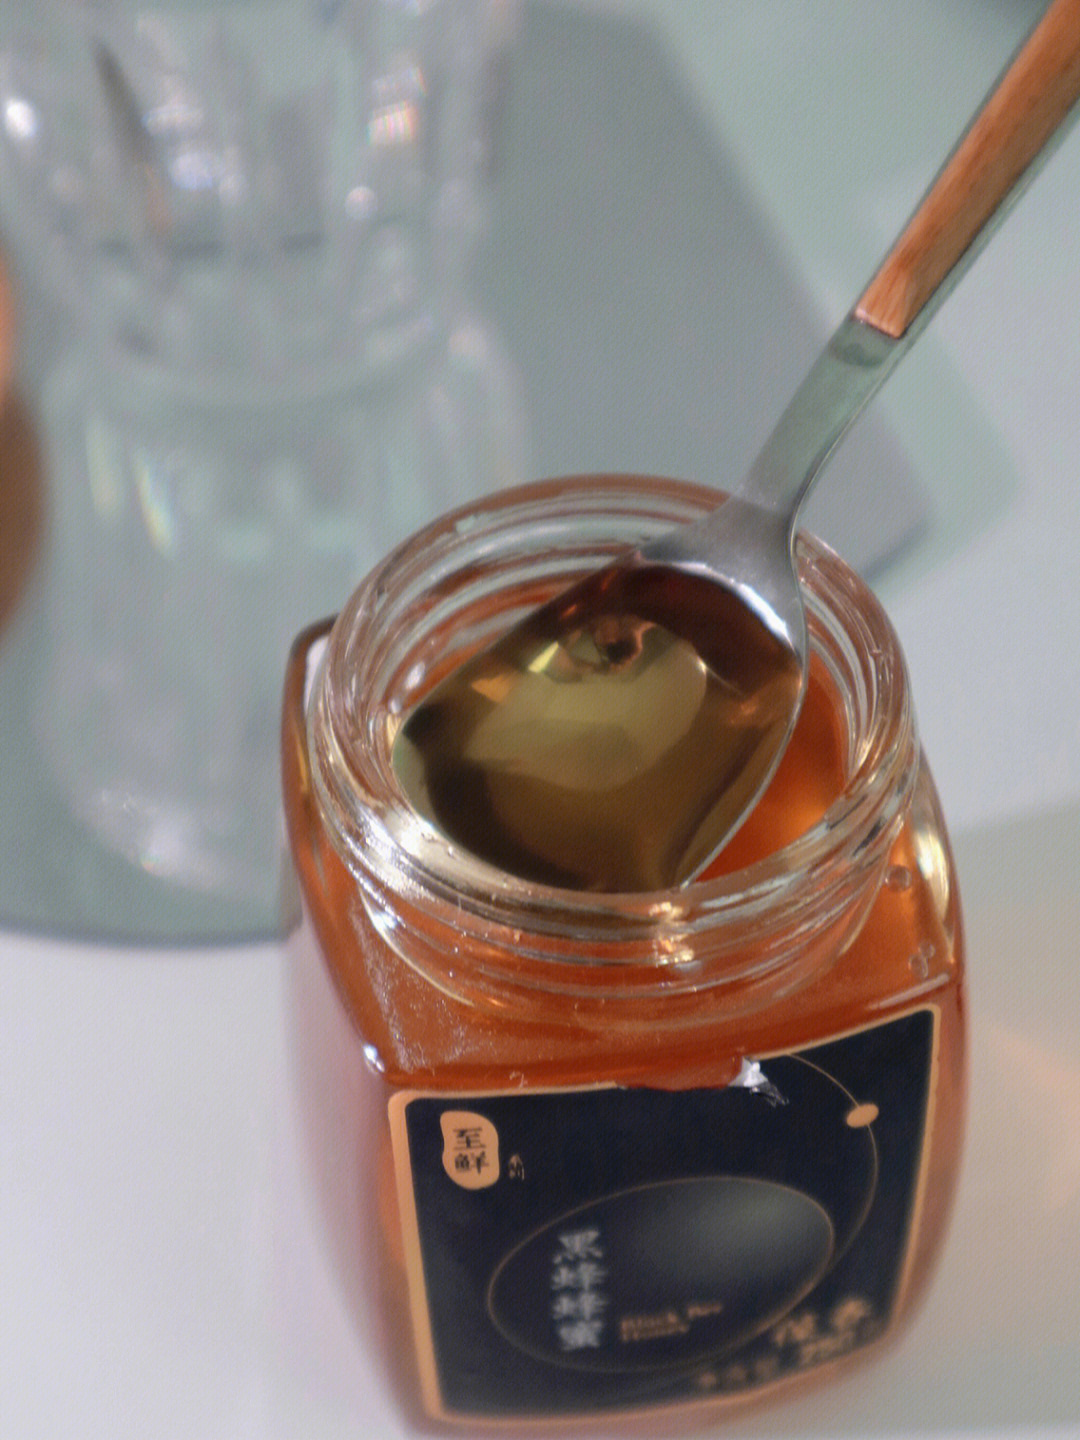 蜂蜜呈浅琥珀色新疆阿勒泰 黑蜂蜂蜜,自然成熟,珍稀好蜜无任何添加,减